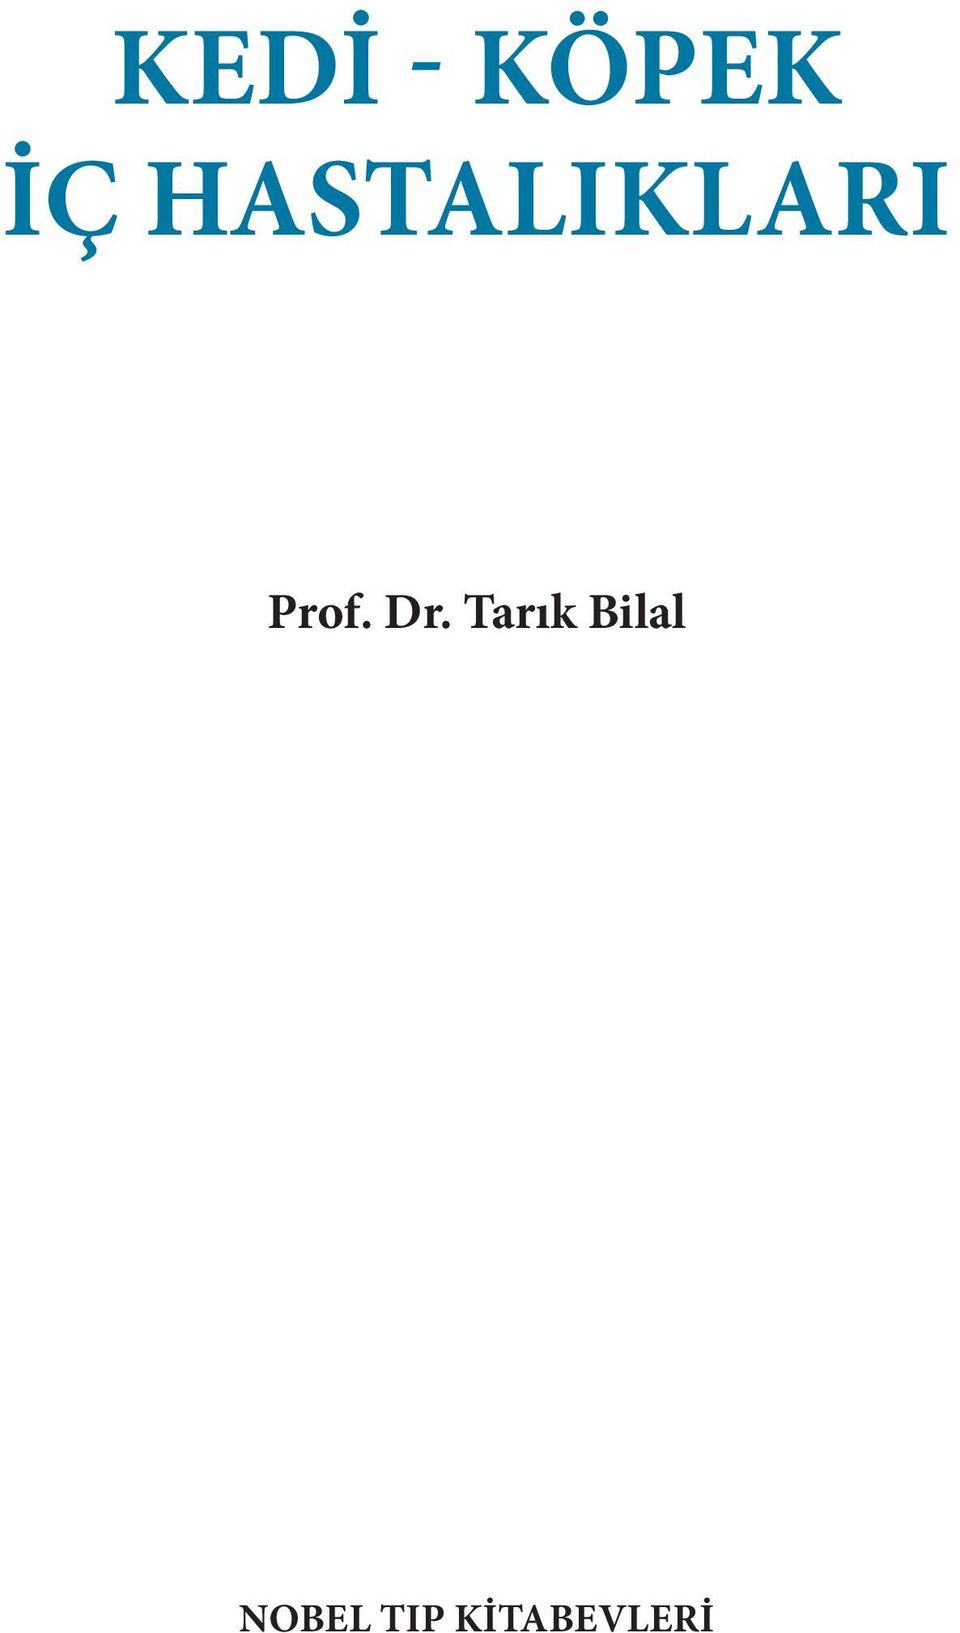 Dr. Tarık Bilal